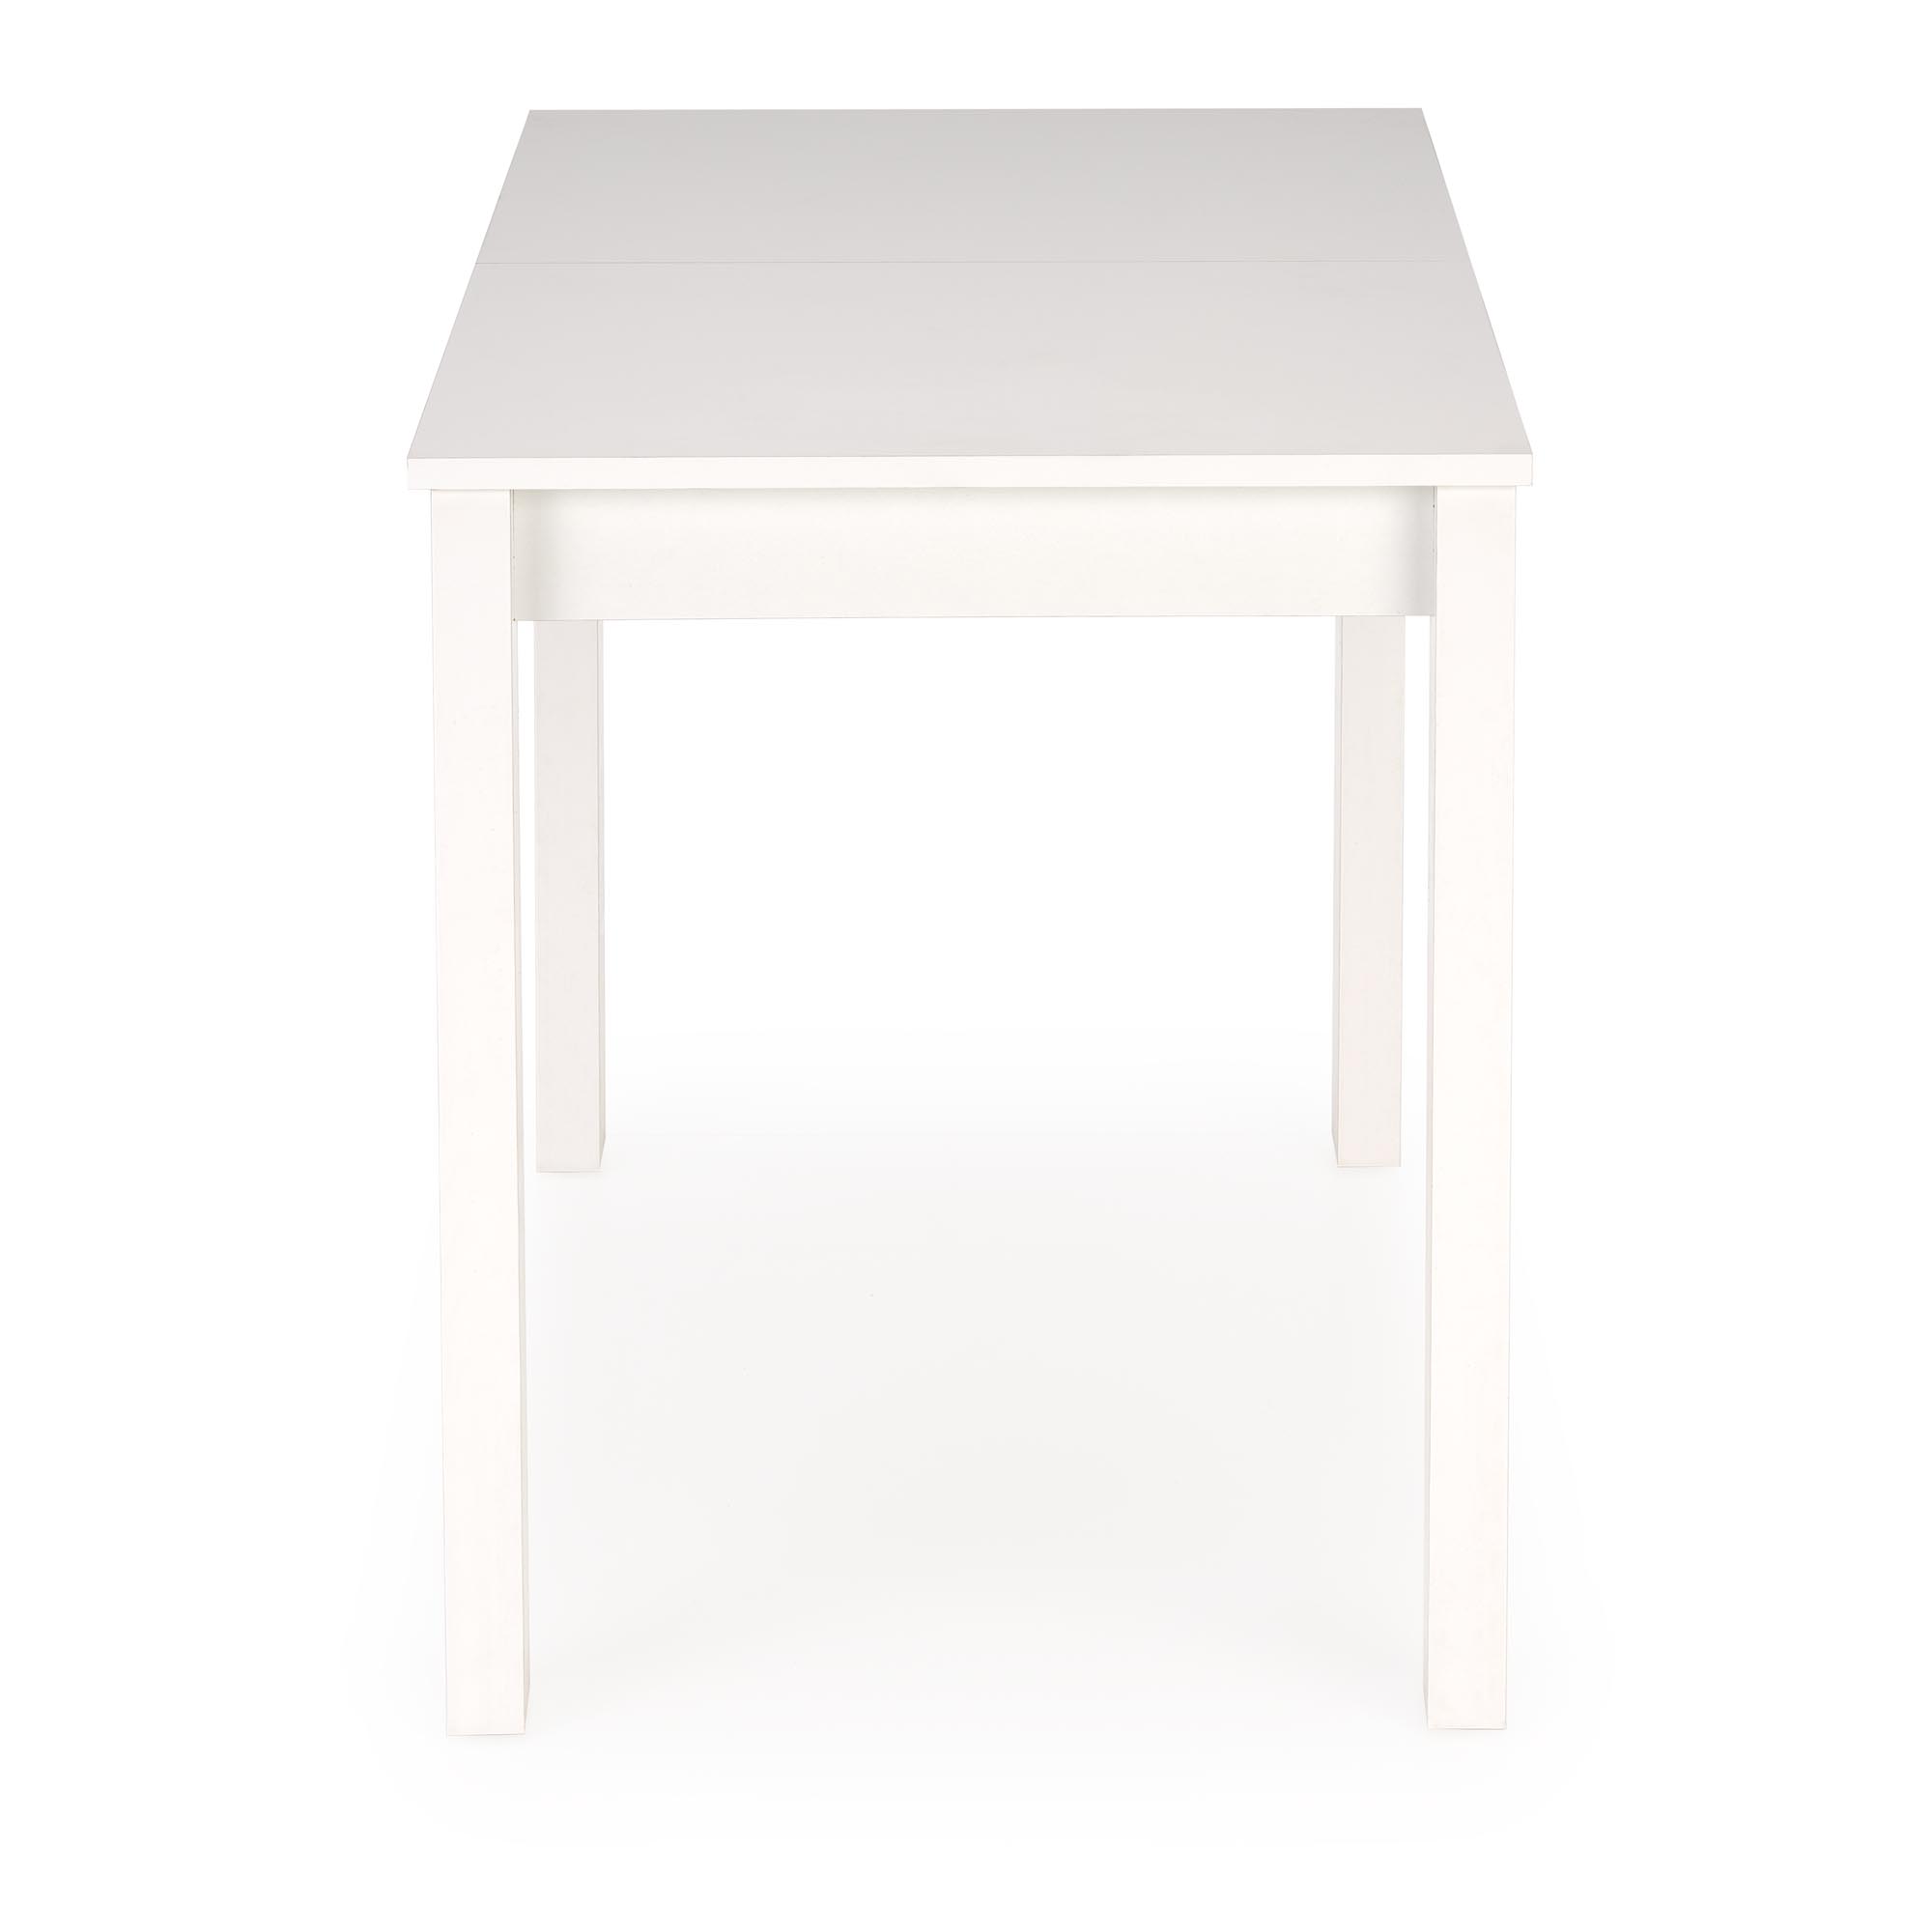 Rozkládací stůl GINO 100-130 cm - bílá gino stůl rozkládací Deska - Bílý, Nohy - Bílý